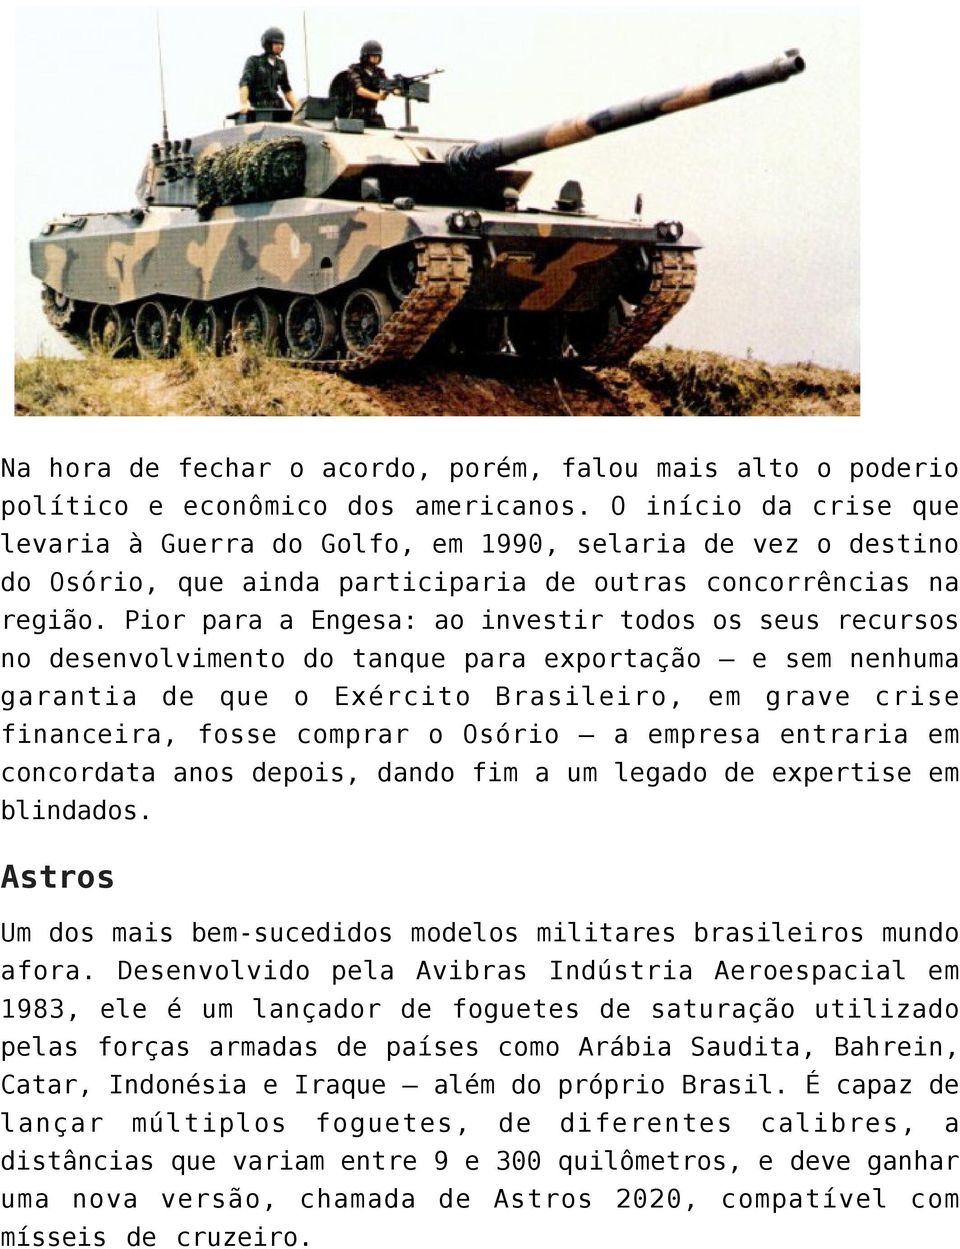 Pior para a Engesa: ao investir todos os seus recursos no desenvolvimento do tanque para exportação e sem nenhuma garantia de que o Exército Brasileiro, em grave crise financeira, fosse comprar o